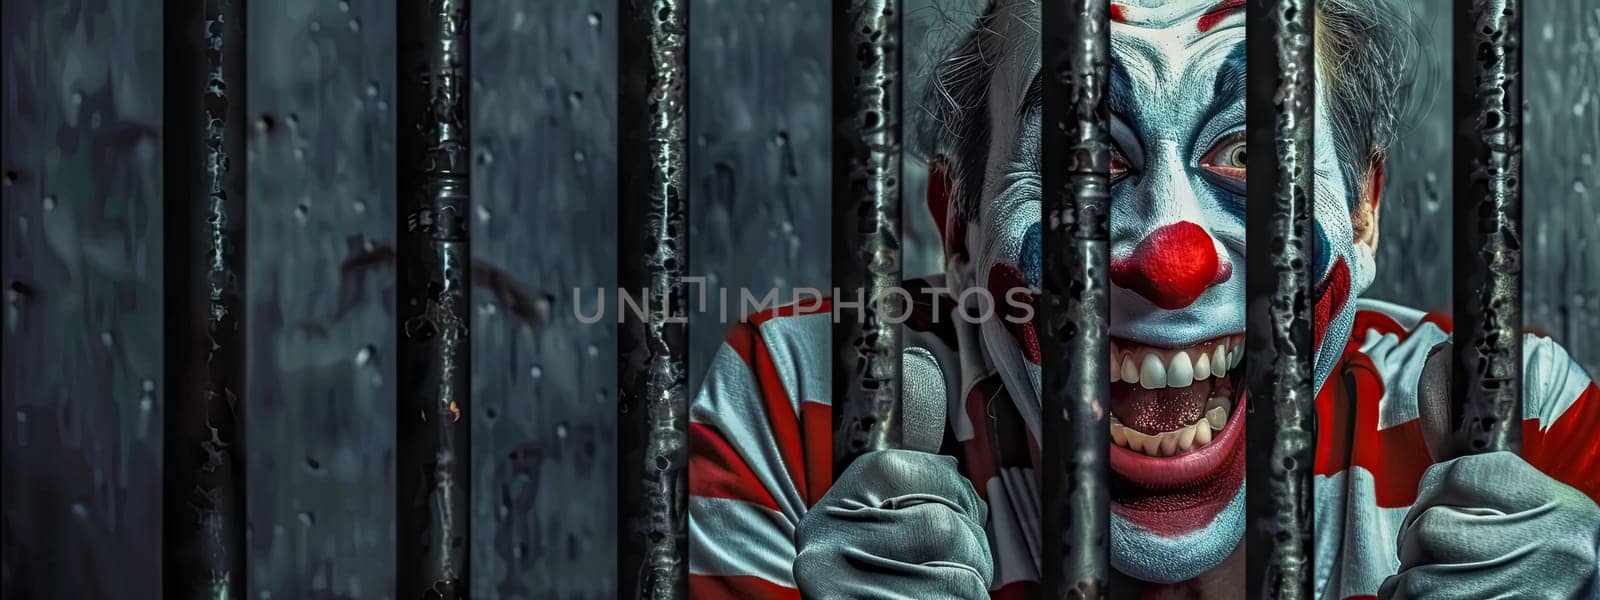 Creepy Clown Behind Rainy Jail Bars by Edophoto